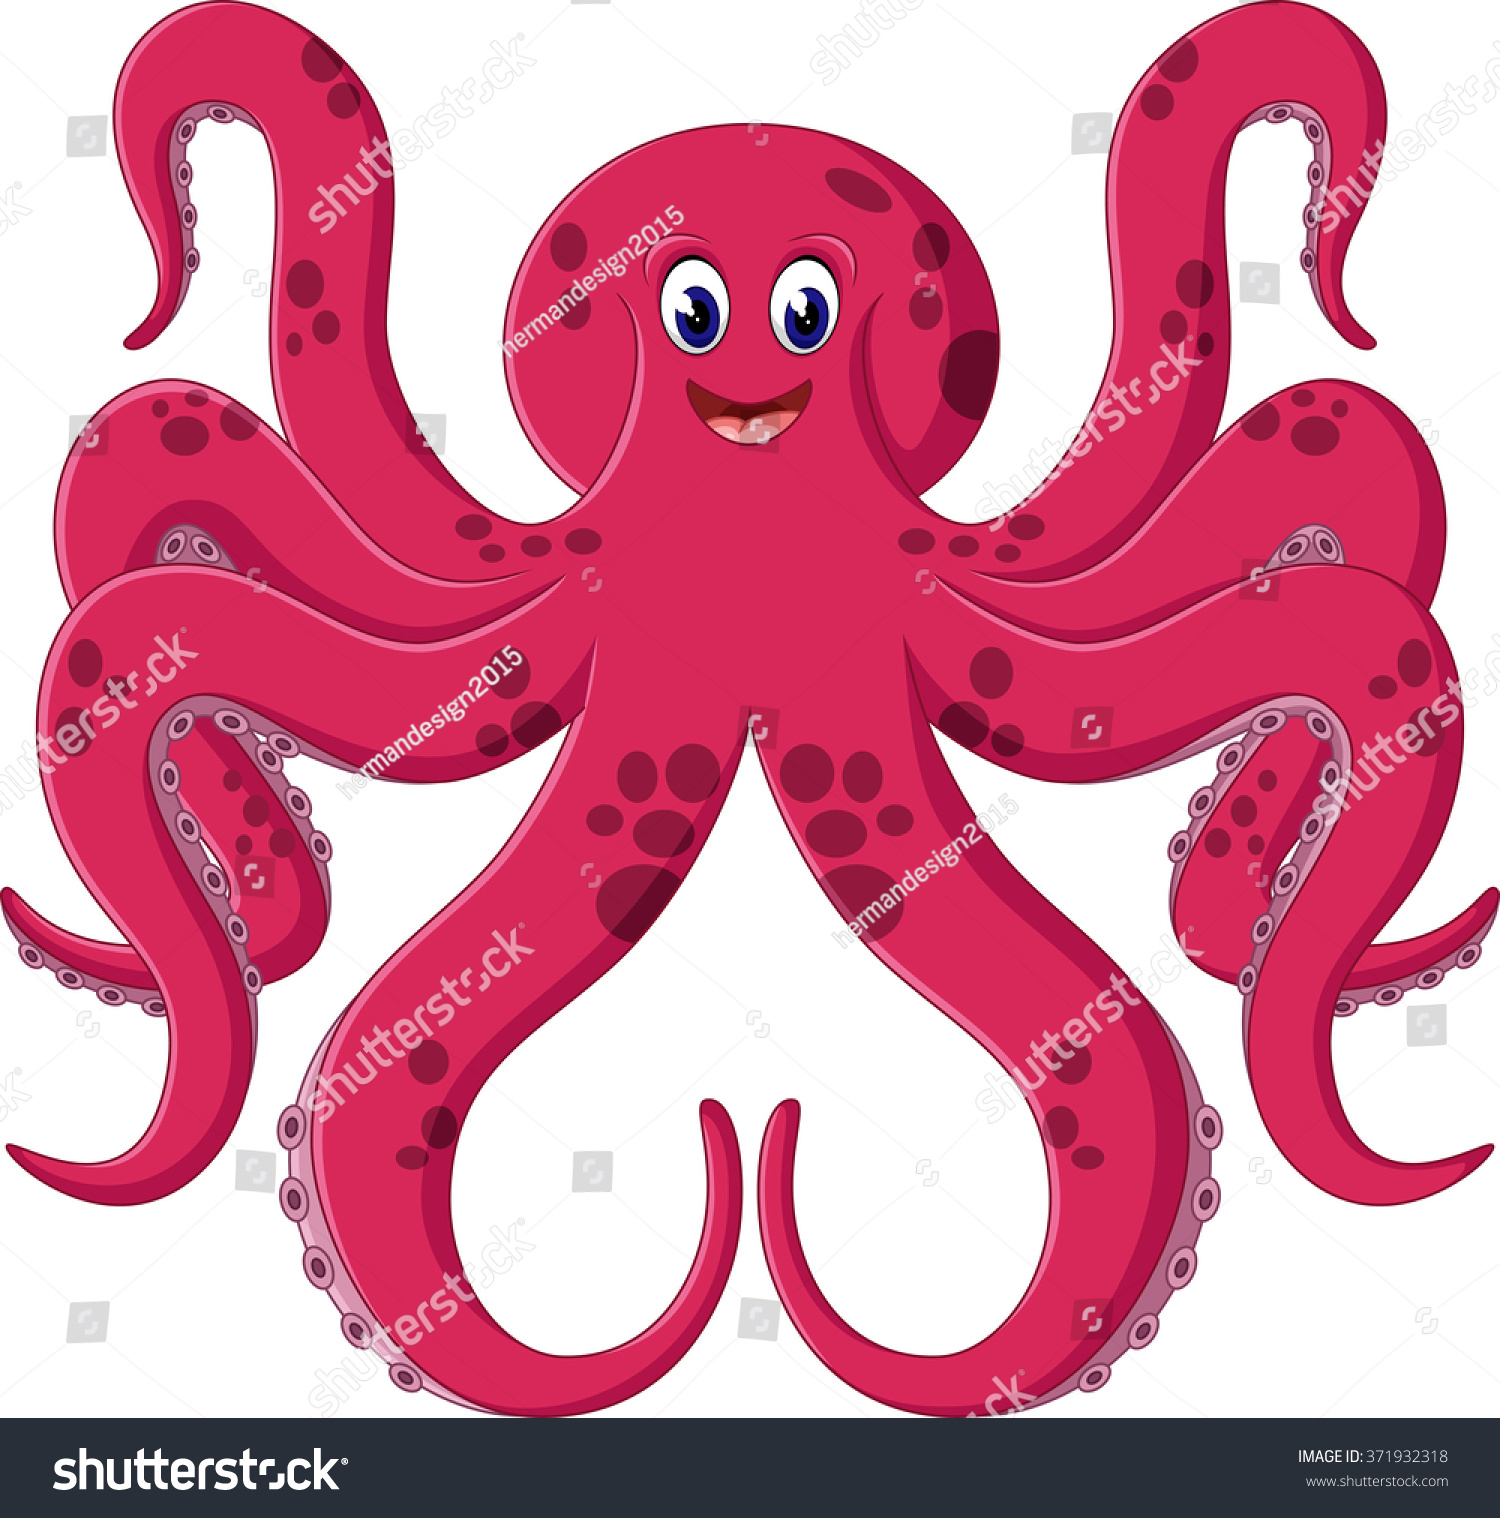 illustration of cute octopus cartoon  371932318  shutterstock